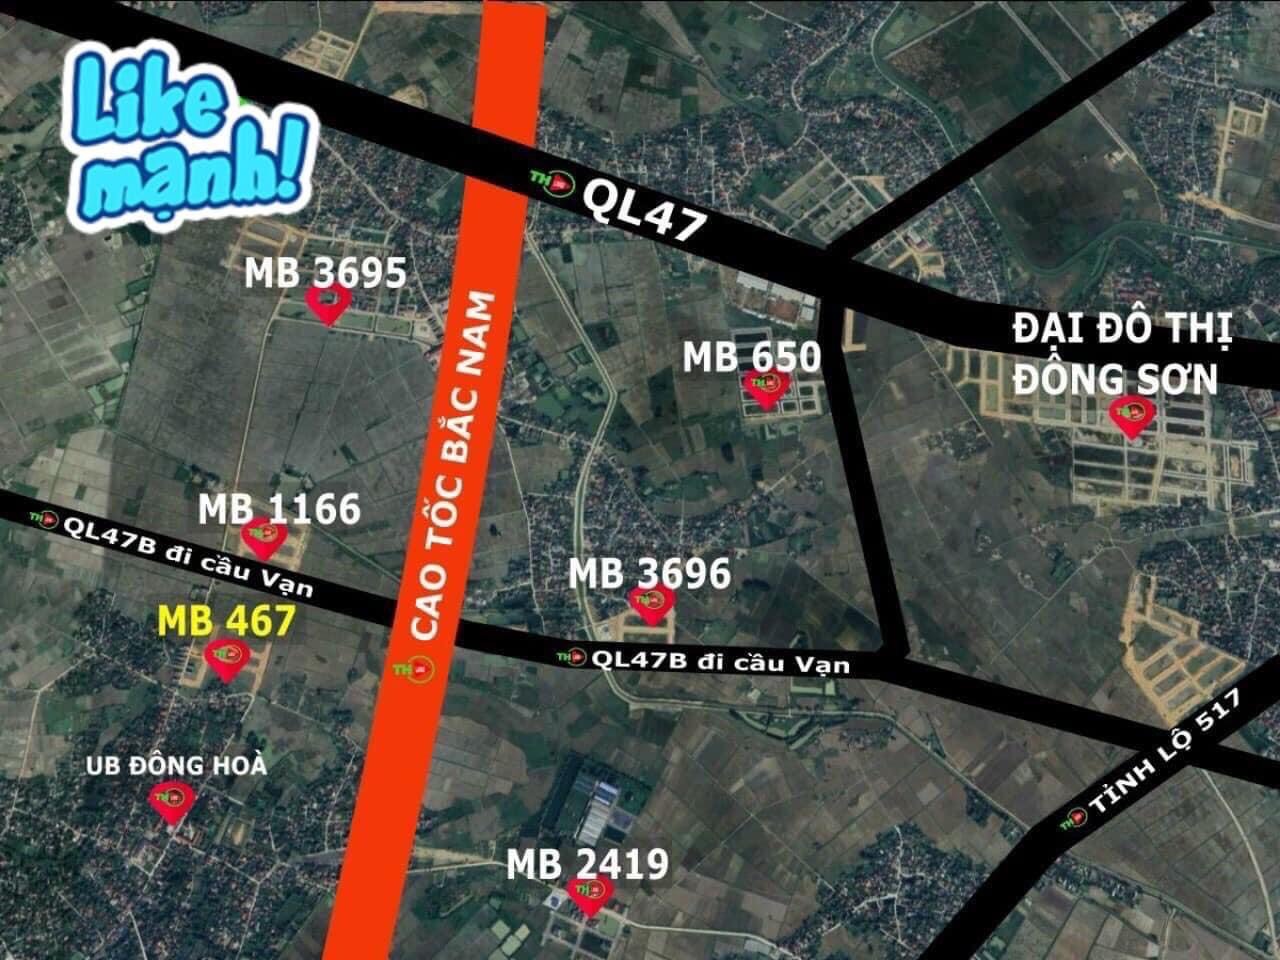 Cần bán Đất Đông Sơn, Thanh Hóa, Diện tích 99m², Giá Thương lượng 5